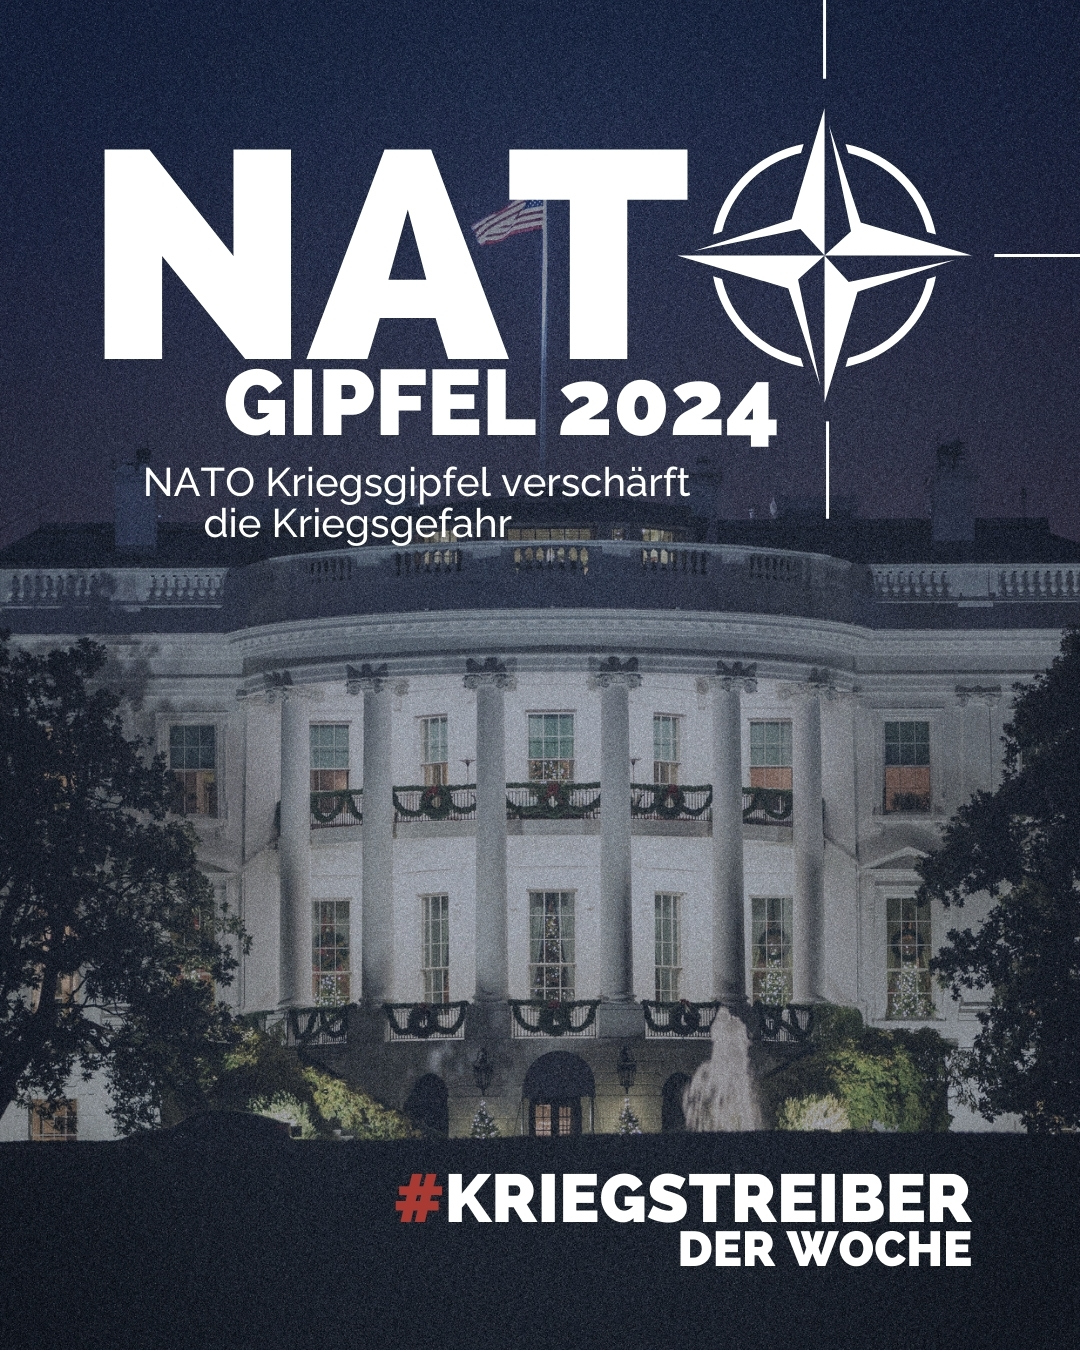 NATO Gipfel 2024 – NATO Kriegsgipfel verschärft die Kriegsgefahr